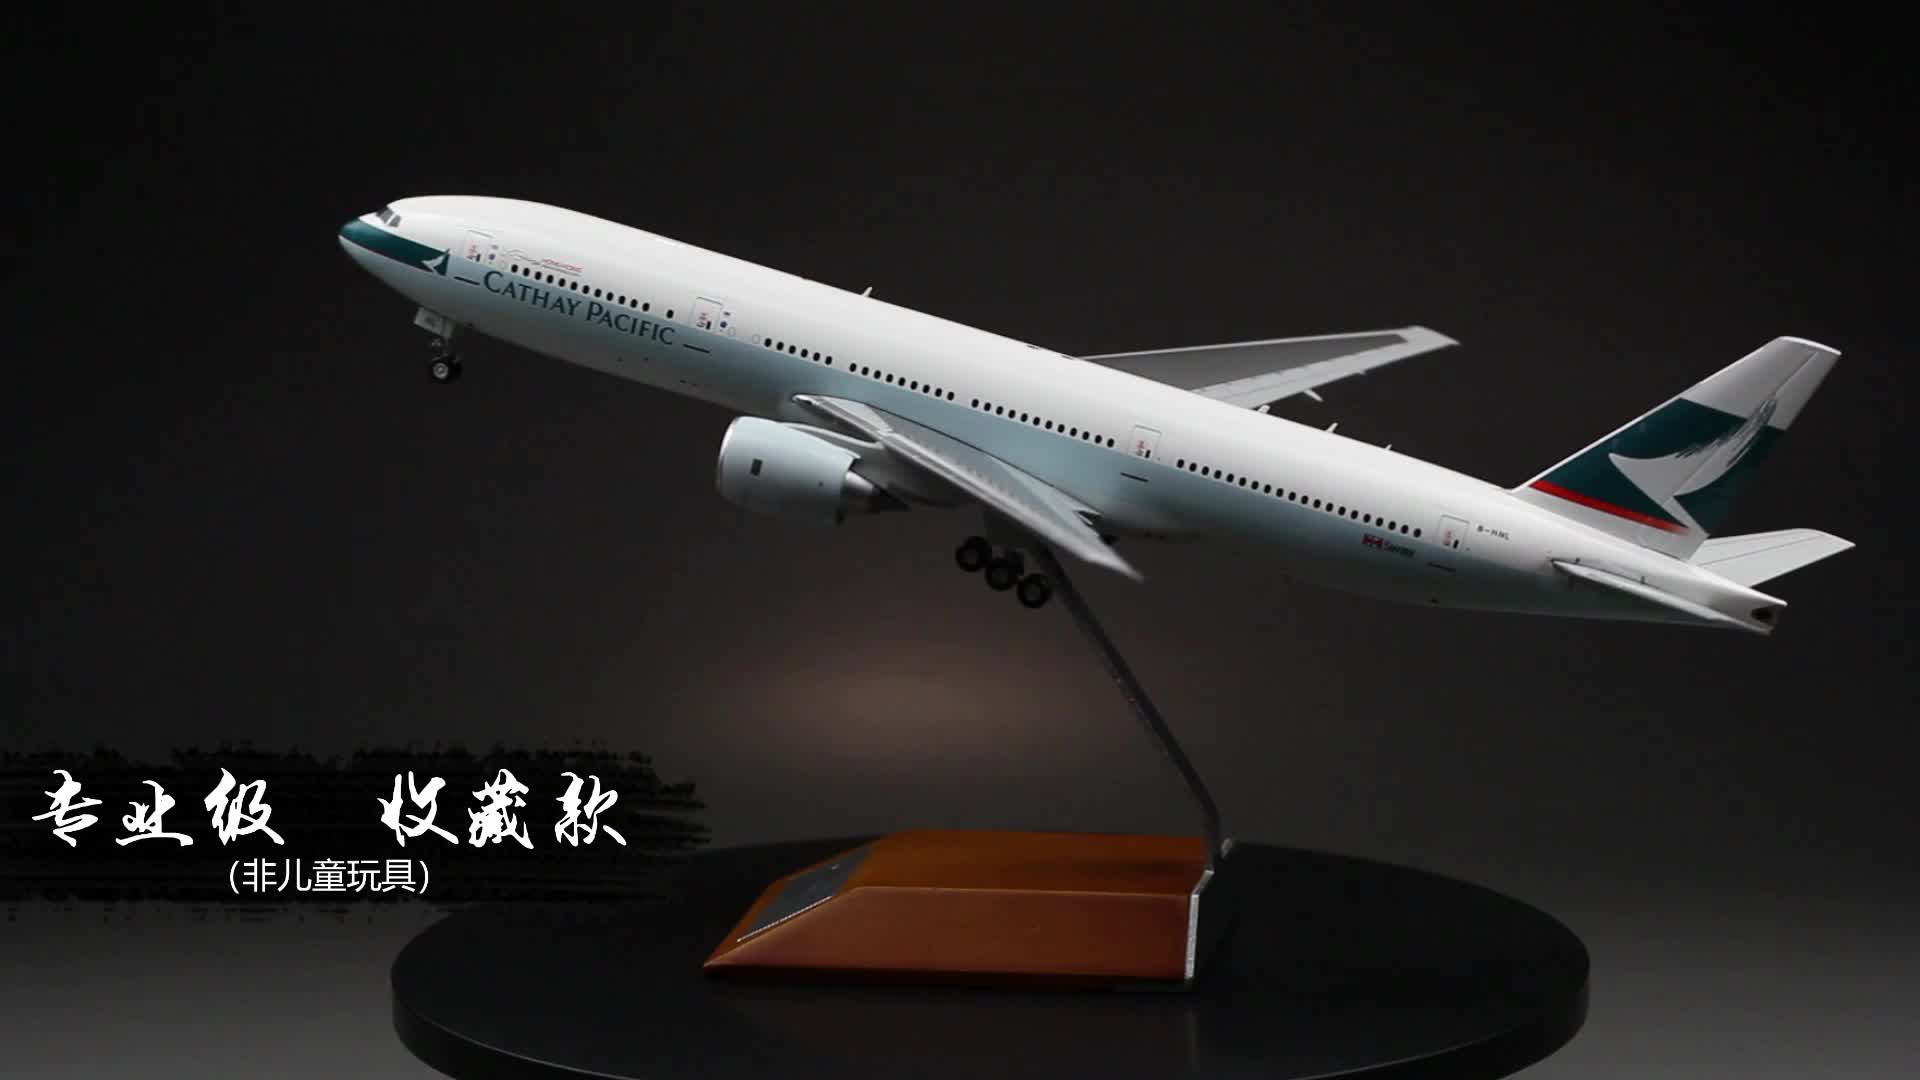 모든 합금 시뮬레이션 대형 항공기 1 /200 보잉 여객기 모델 홍콩 캐세이 패시픽 B777 고급 컬렉션